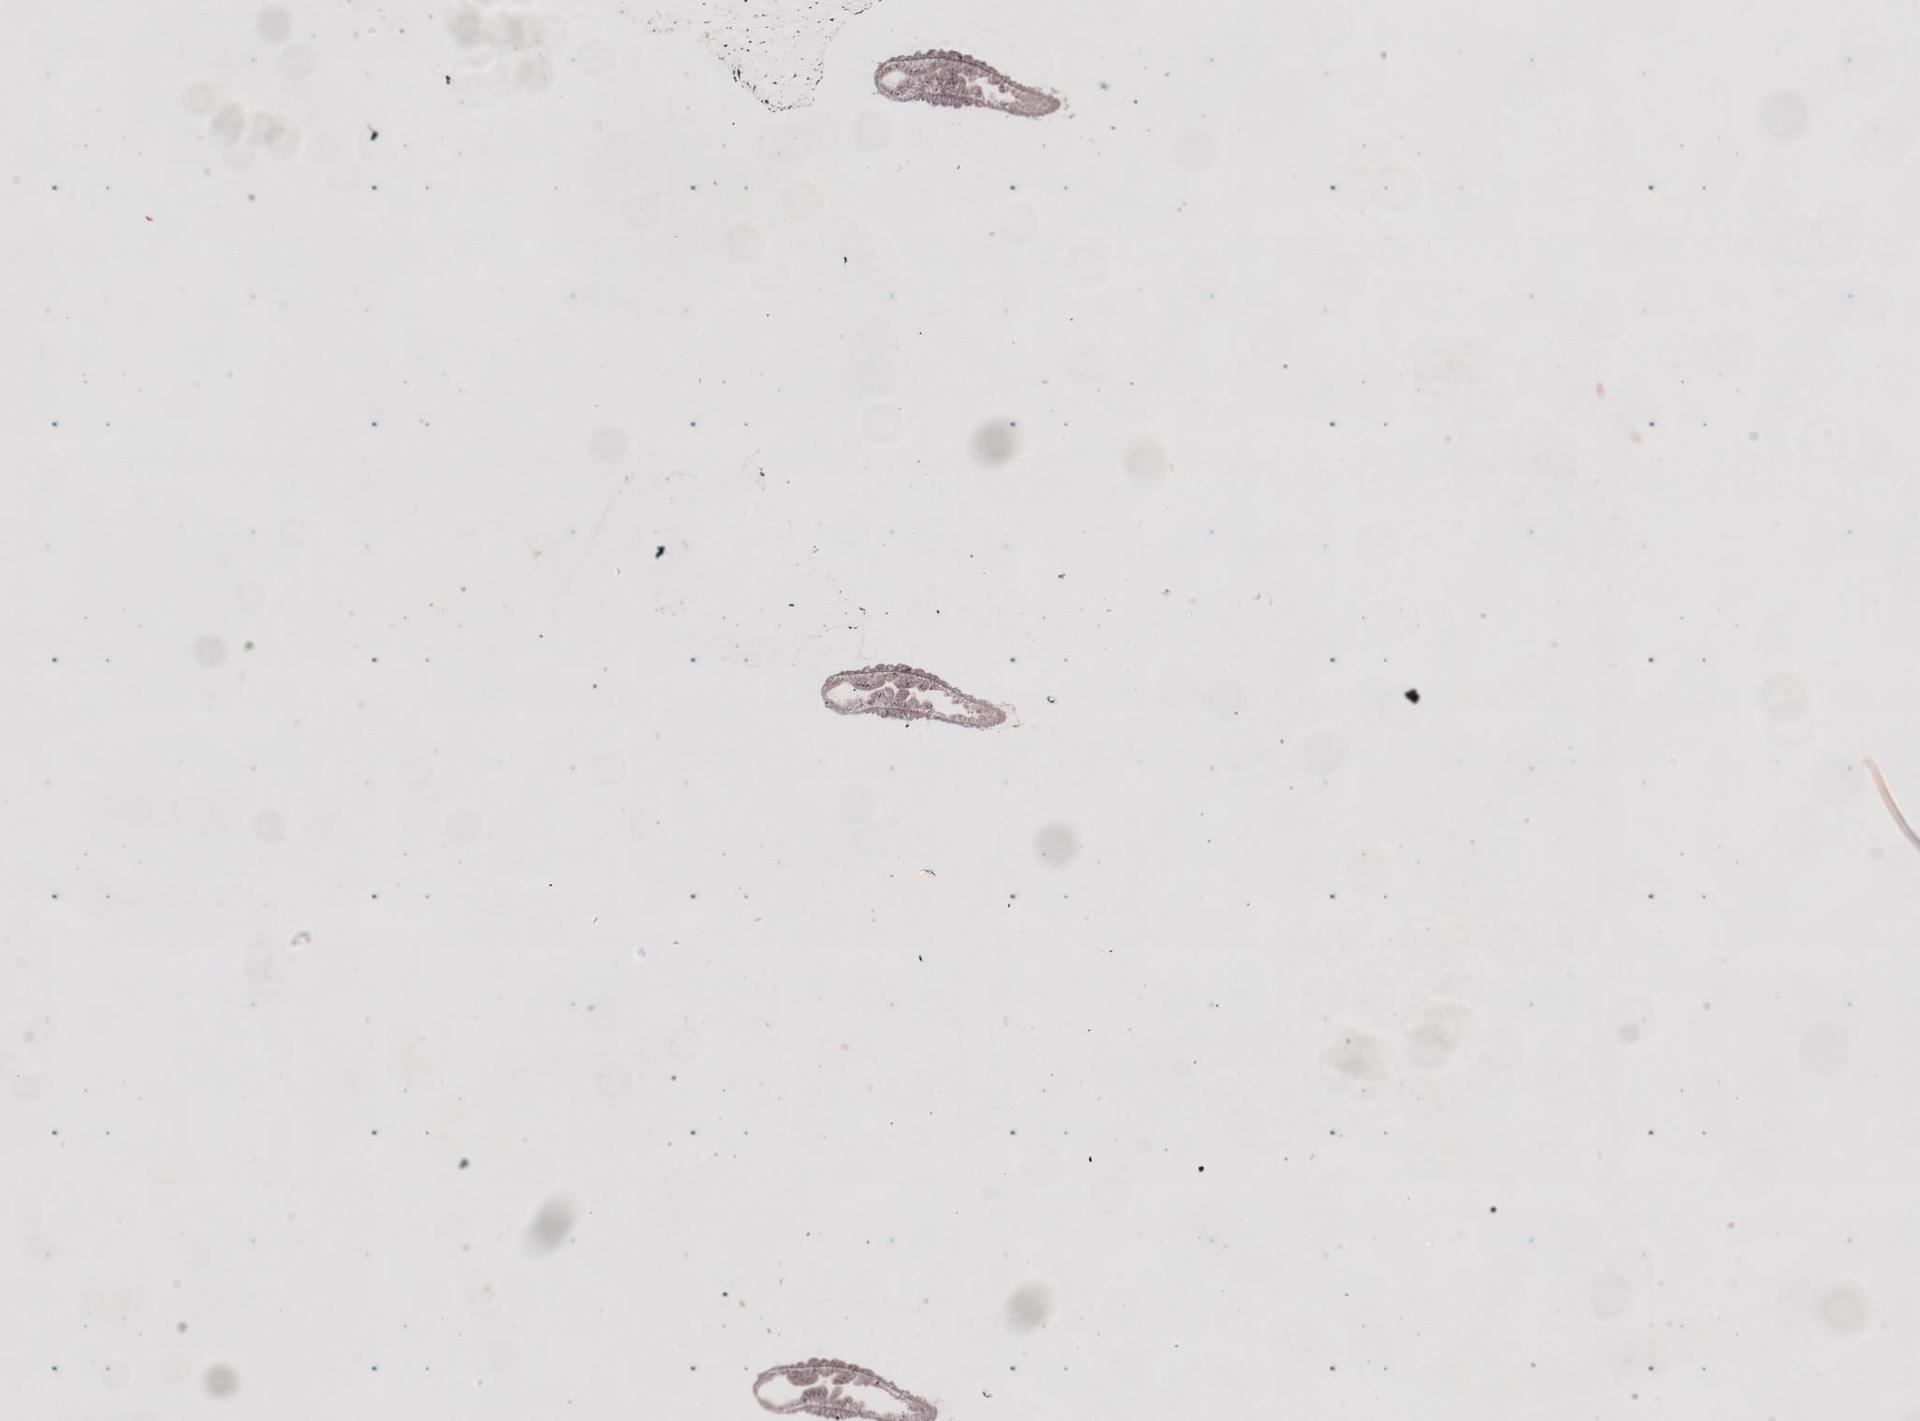 Protohydra leuckarti image